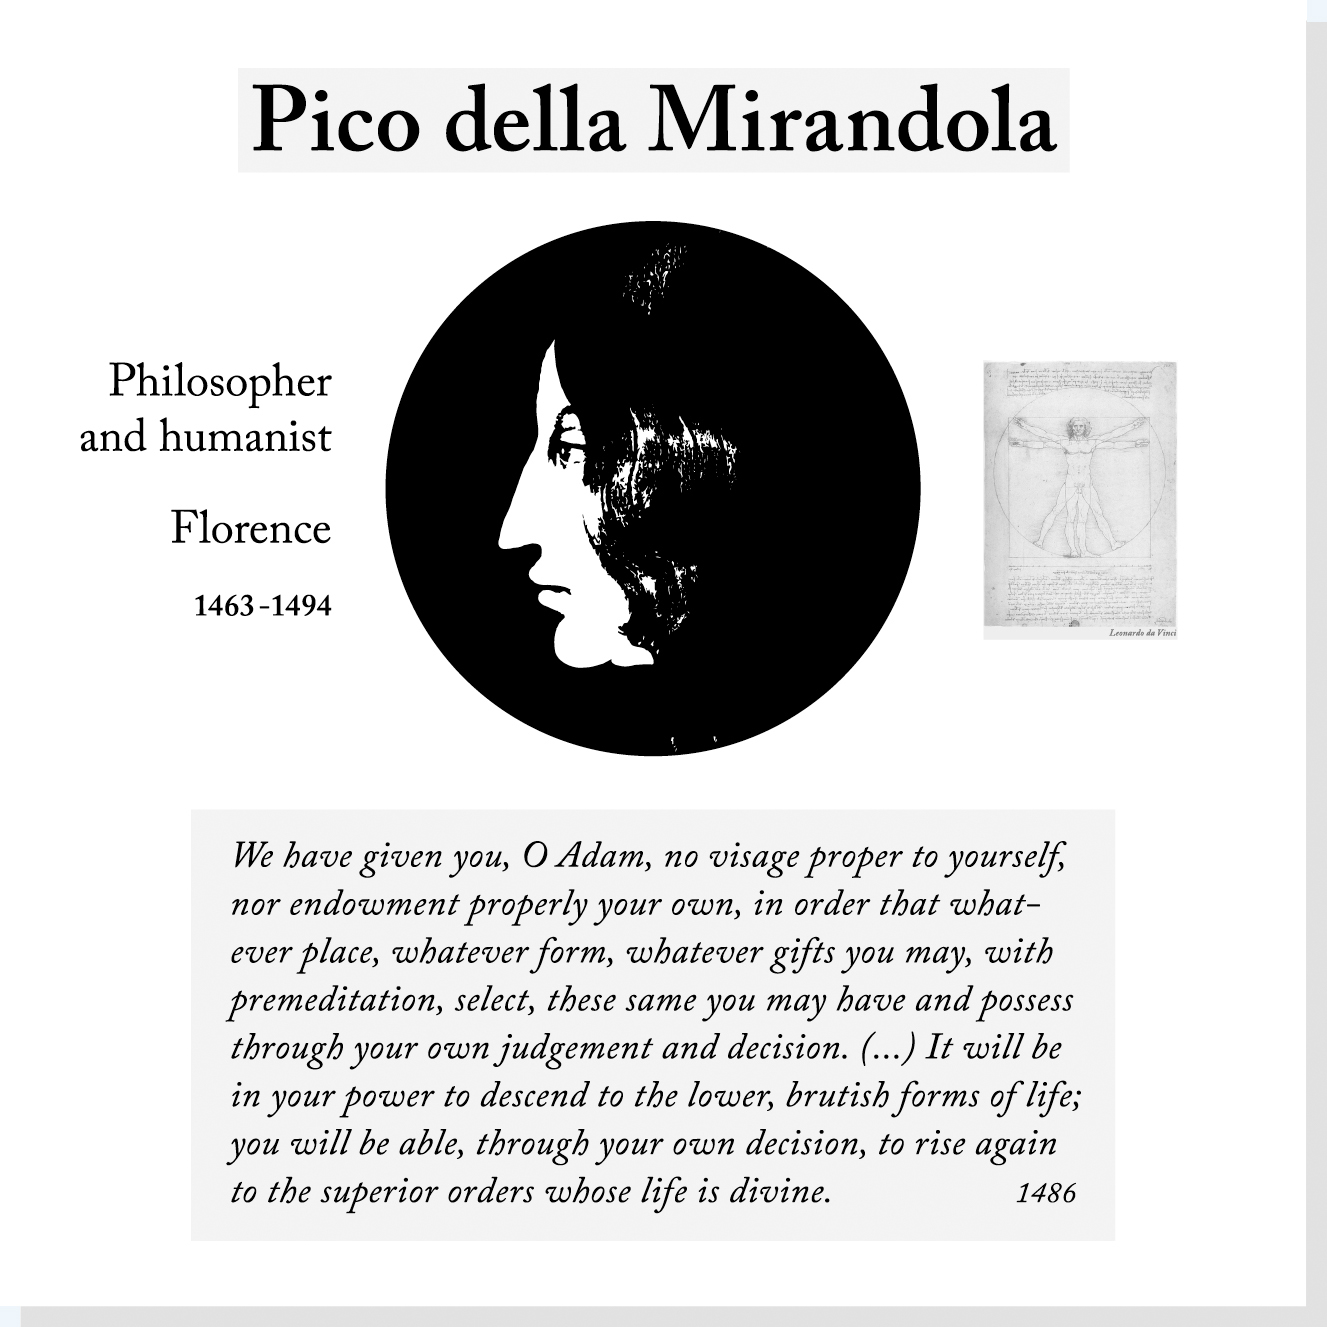 Pico della Mirandola er en af Rysensteens 14 udvalgte verdensborgere